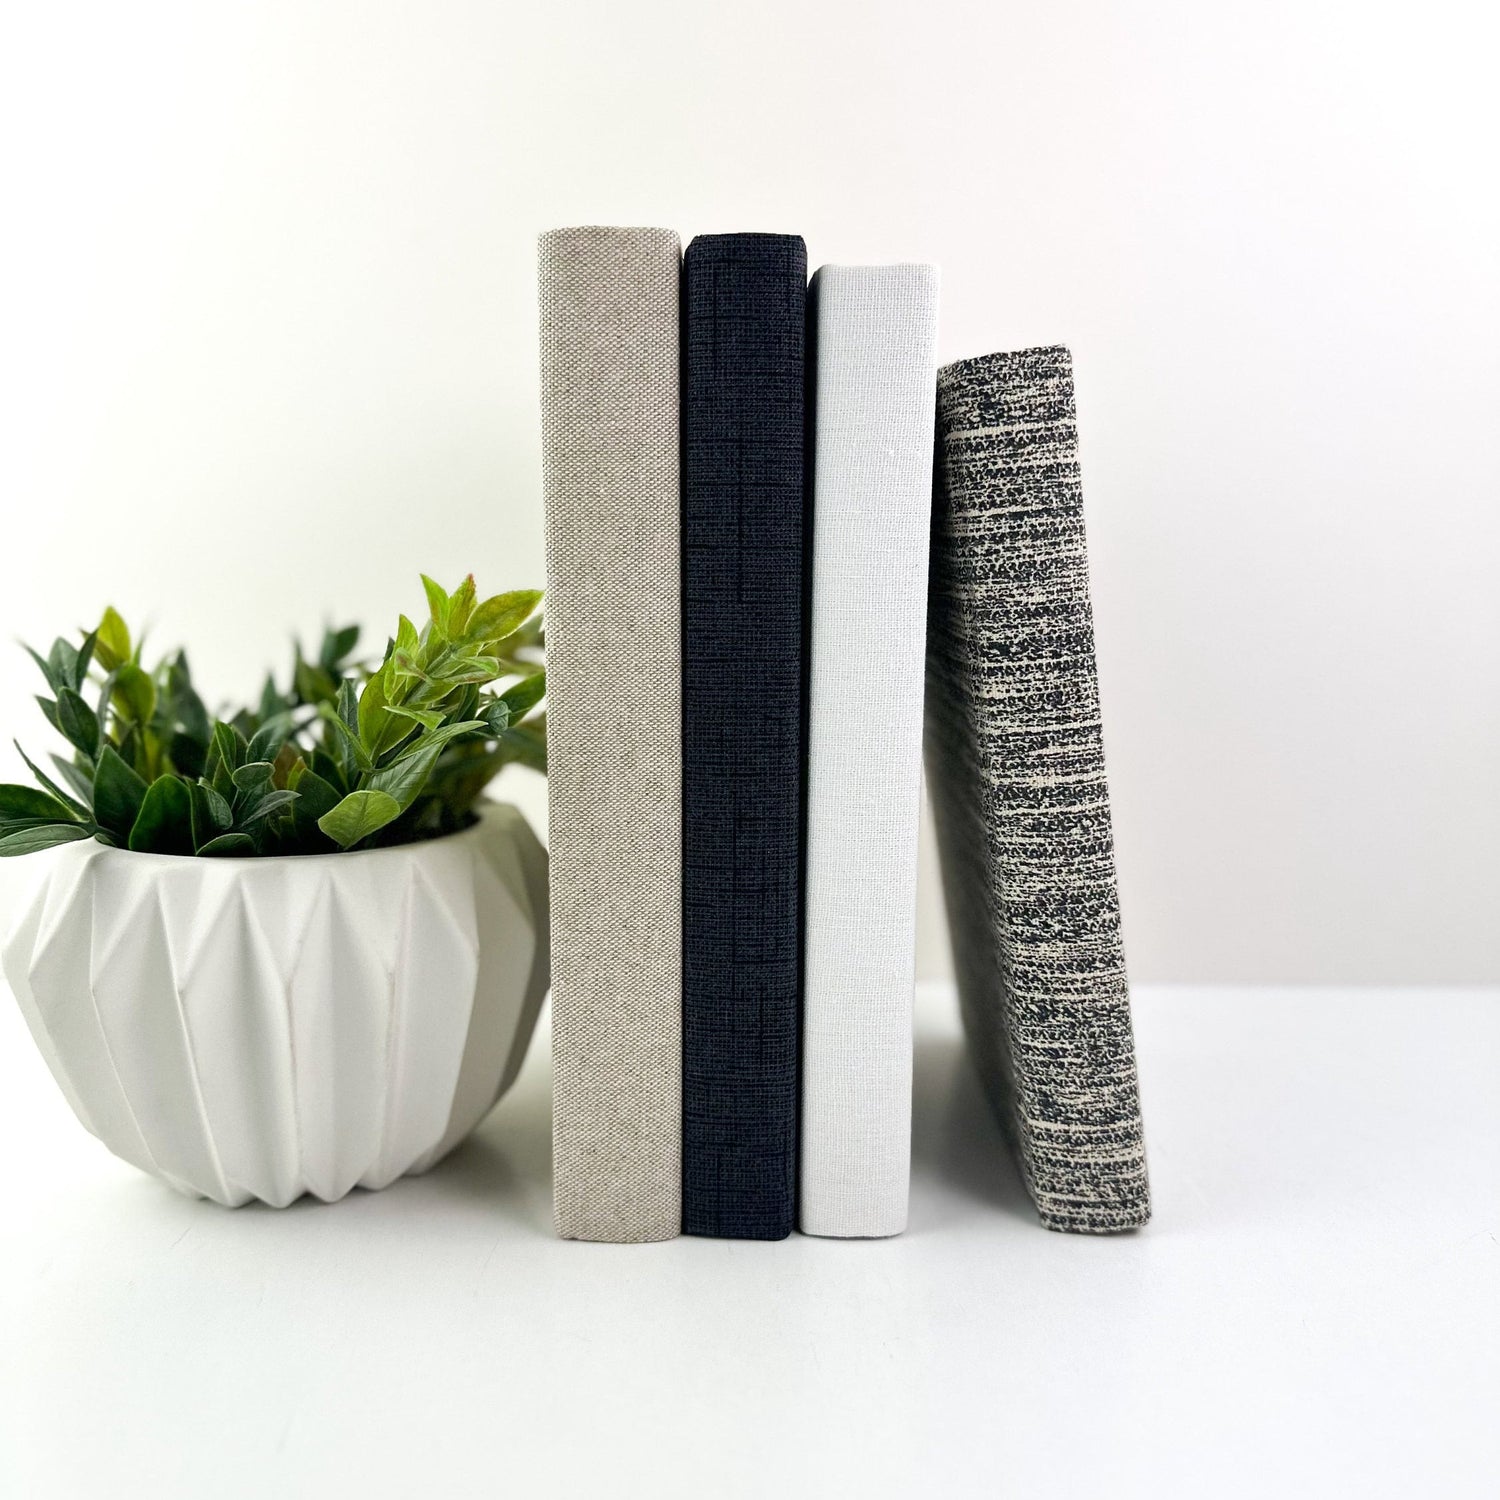 Fabric Decorative Books for Living Room Decor, Book Set for Shelf Decor, Book Bundle, Table Decor